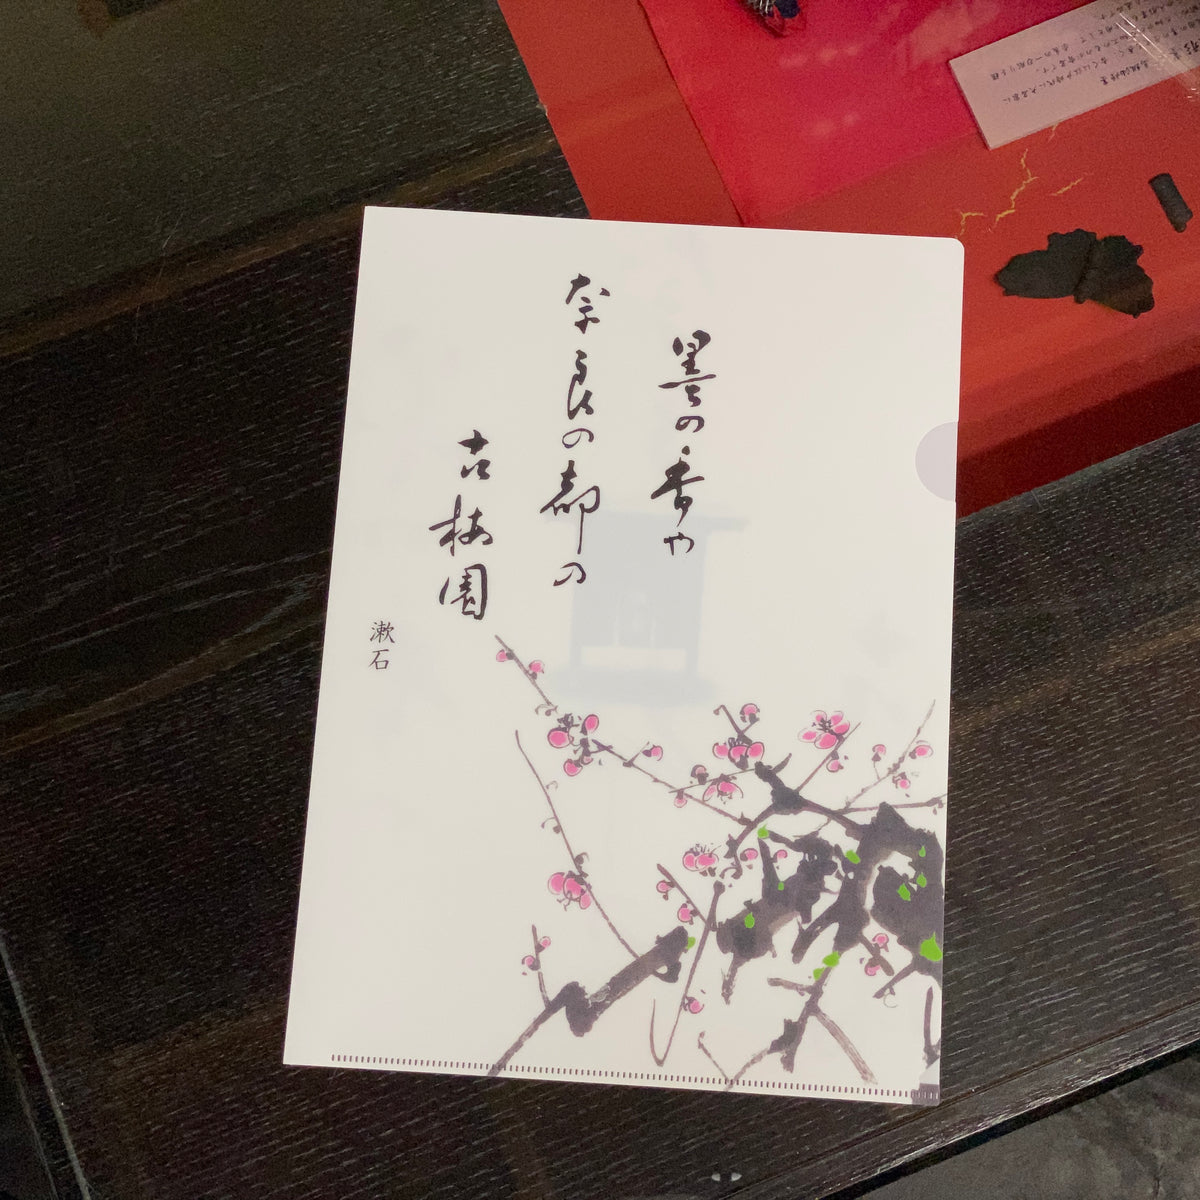 Plum blossoms in spring - Kobaien plastic file folder